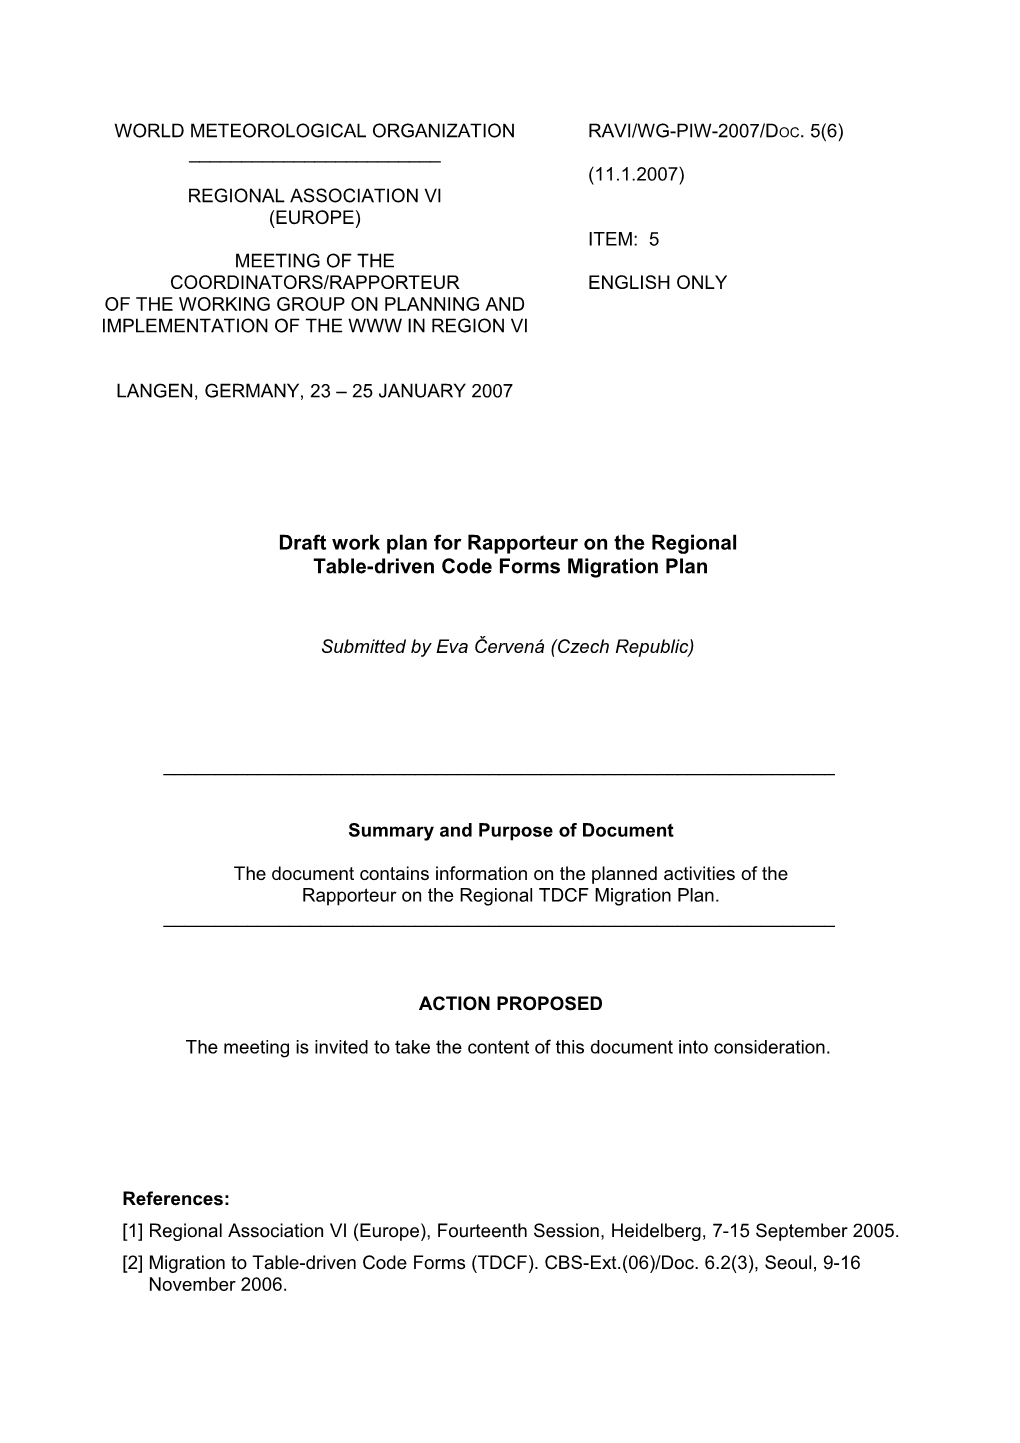 Draft Work Plan for Rapporteur on TDCF Migration Plan